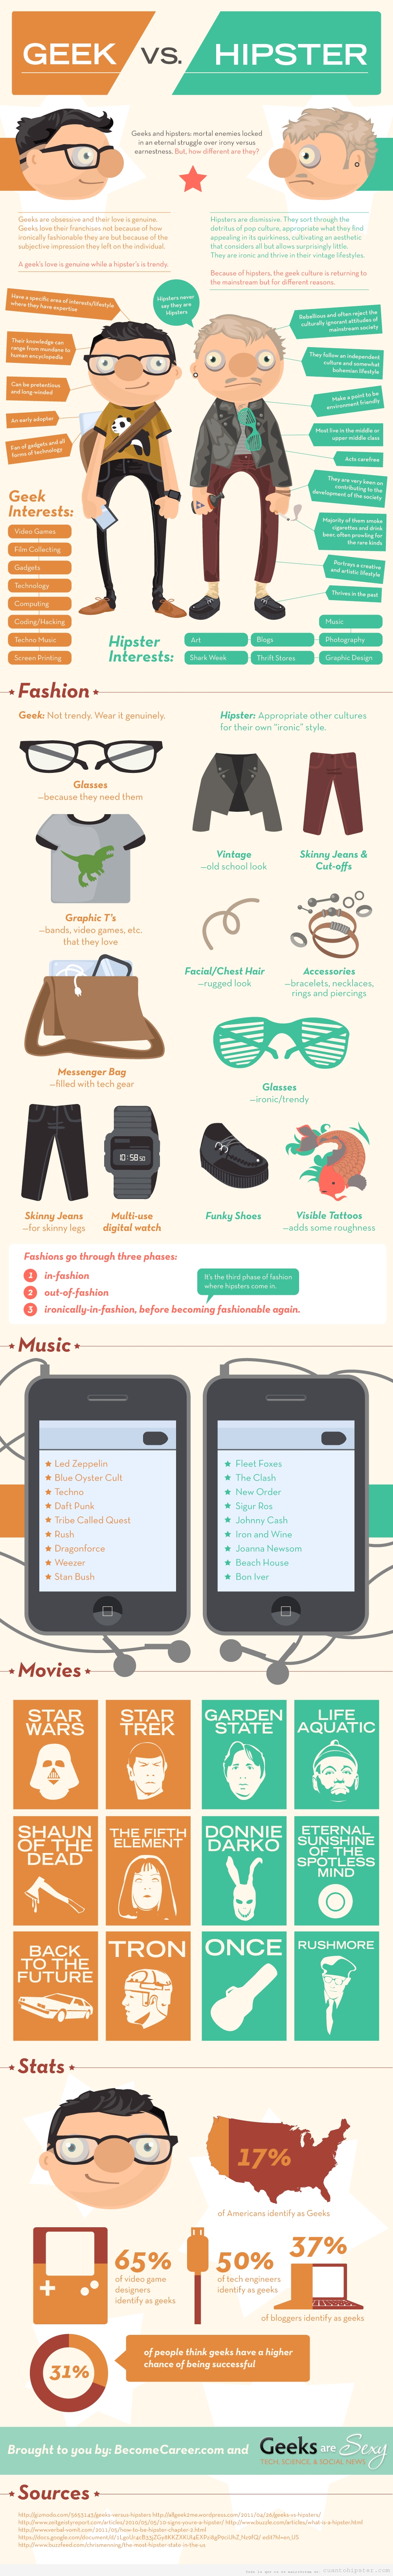 Infografia que muestra las diferencias entre un geek y un hipster